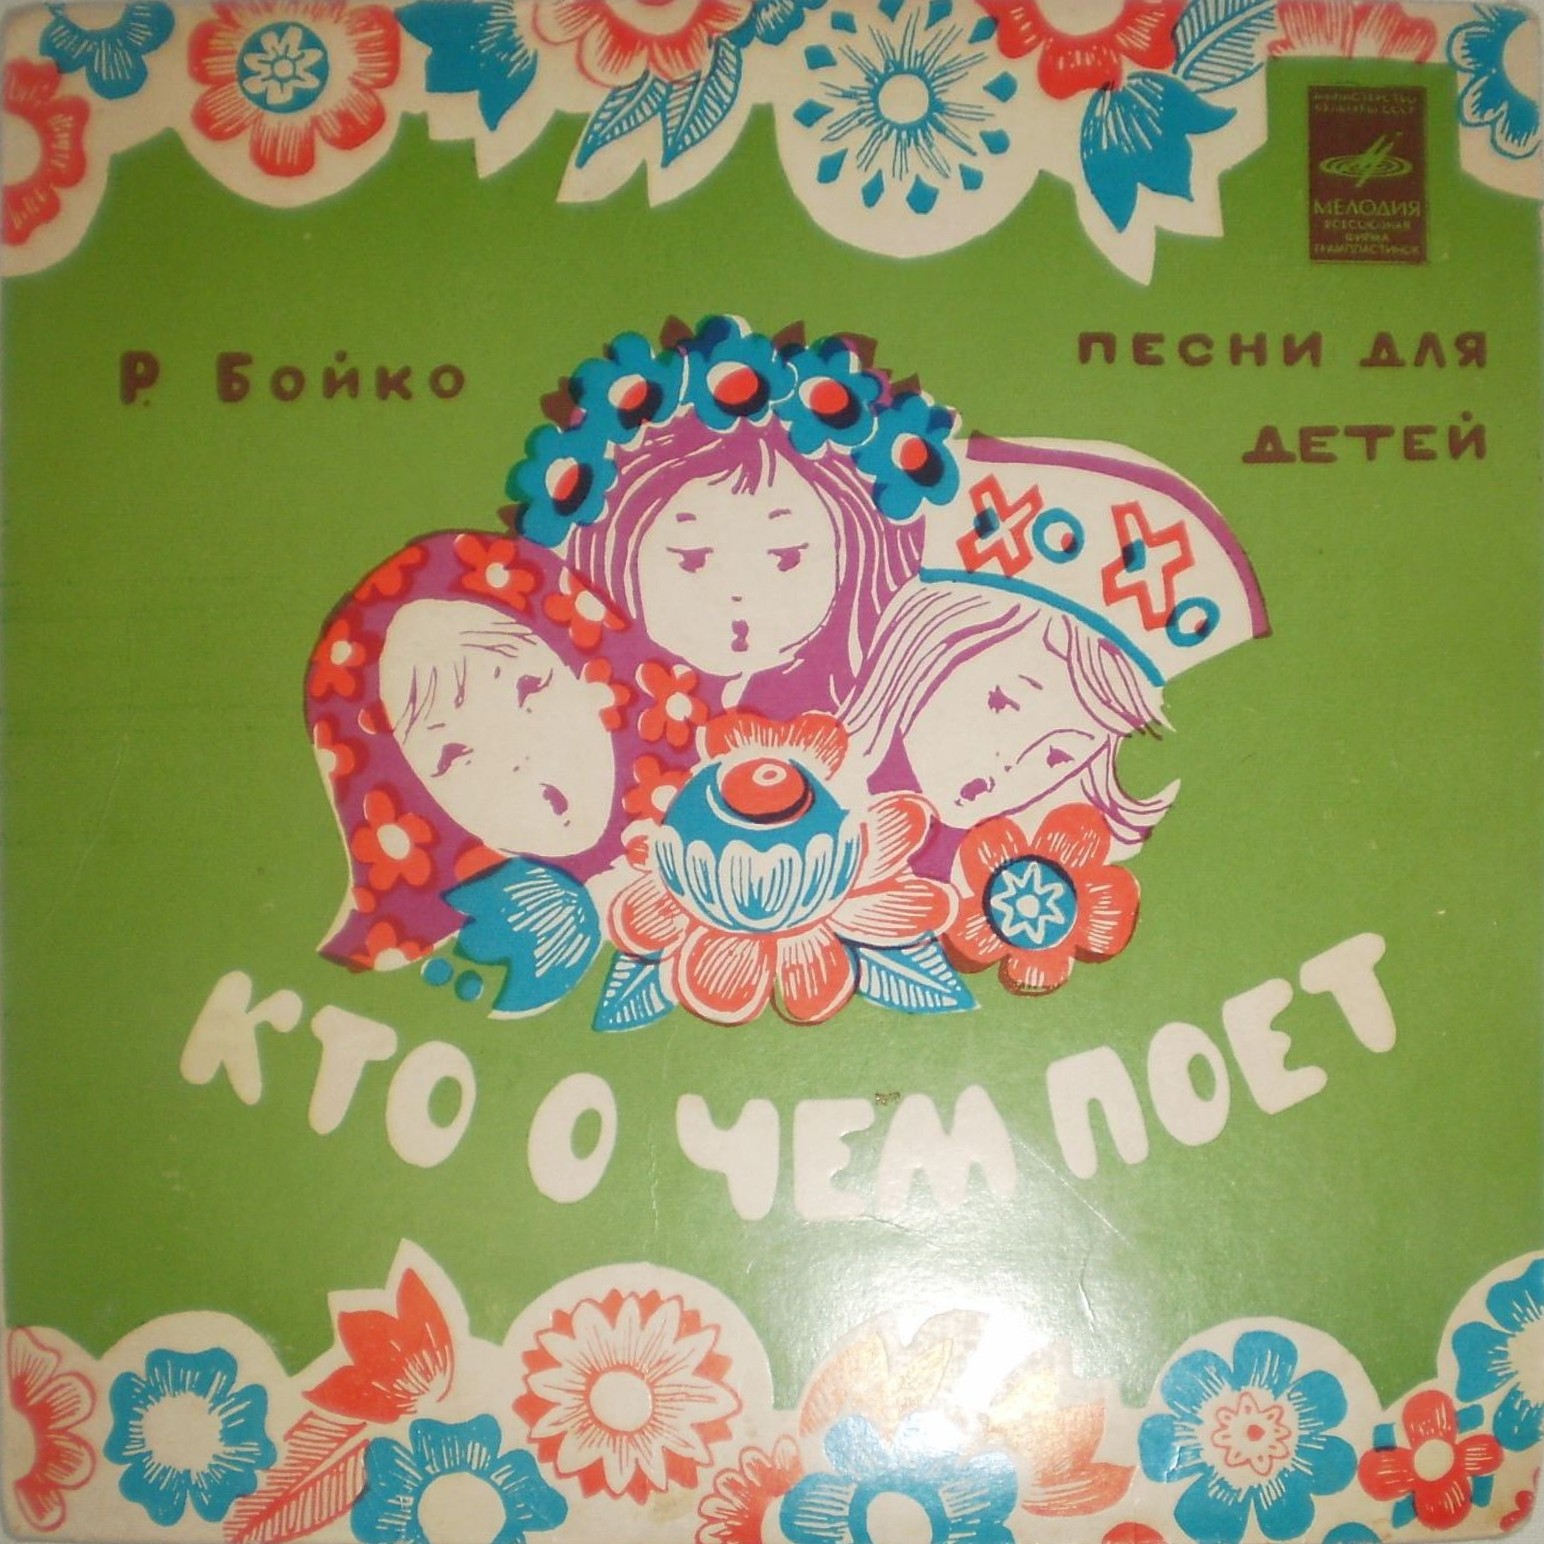 Р. БОЙКО (1931). "Кто о чем поет" (песни для детей)